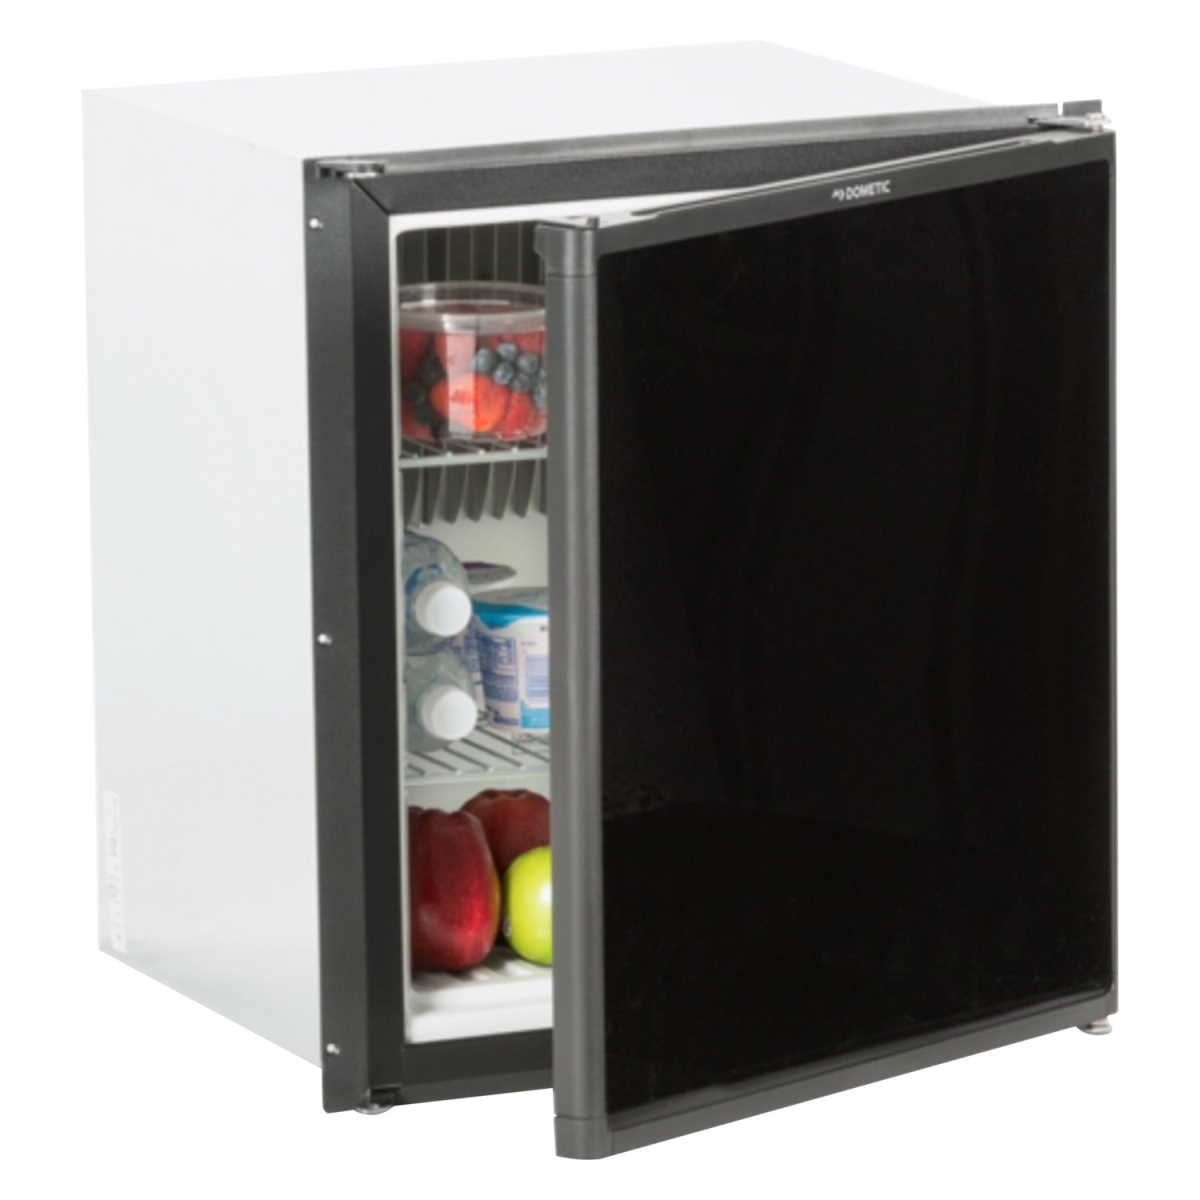 Compact 3-way Refrigerator, Black & Gray